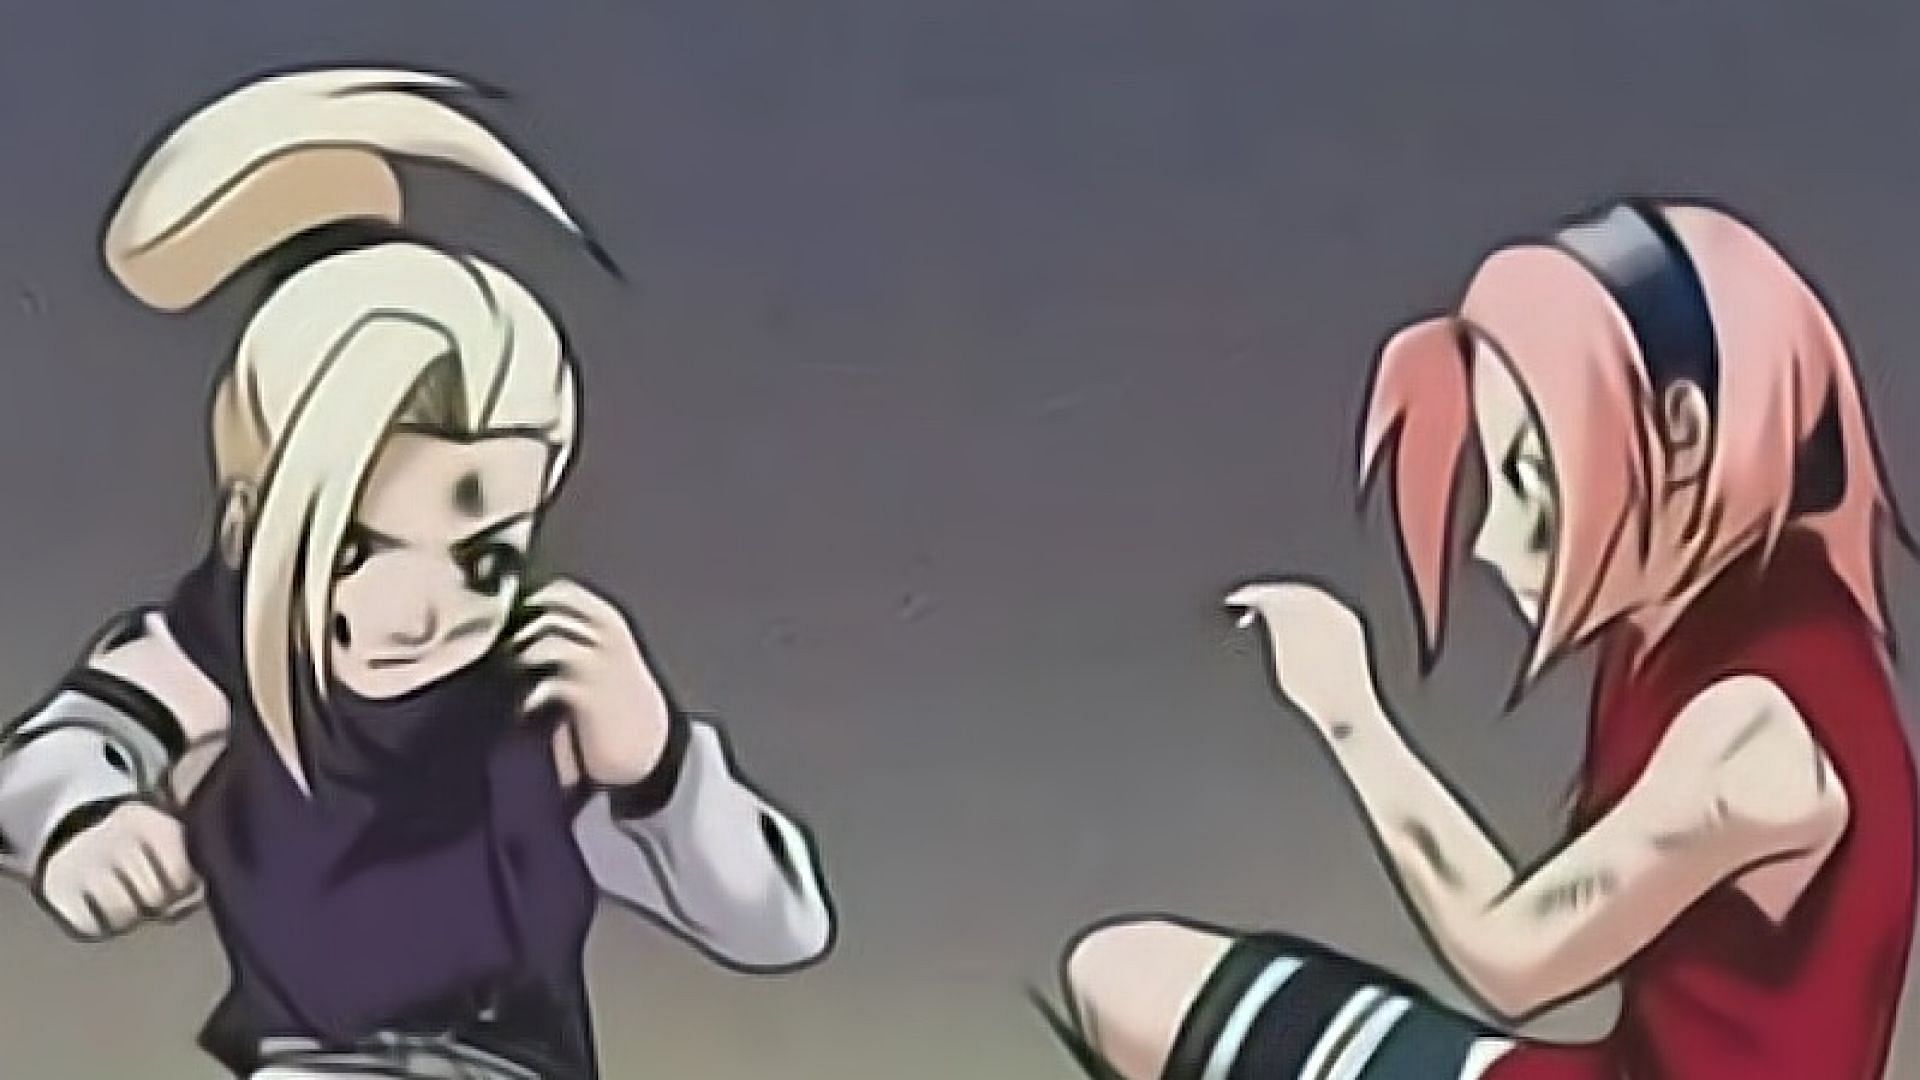 Sakura vs Ino (Image via Naruto)